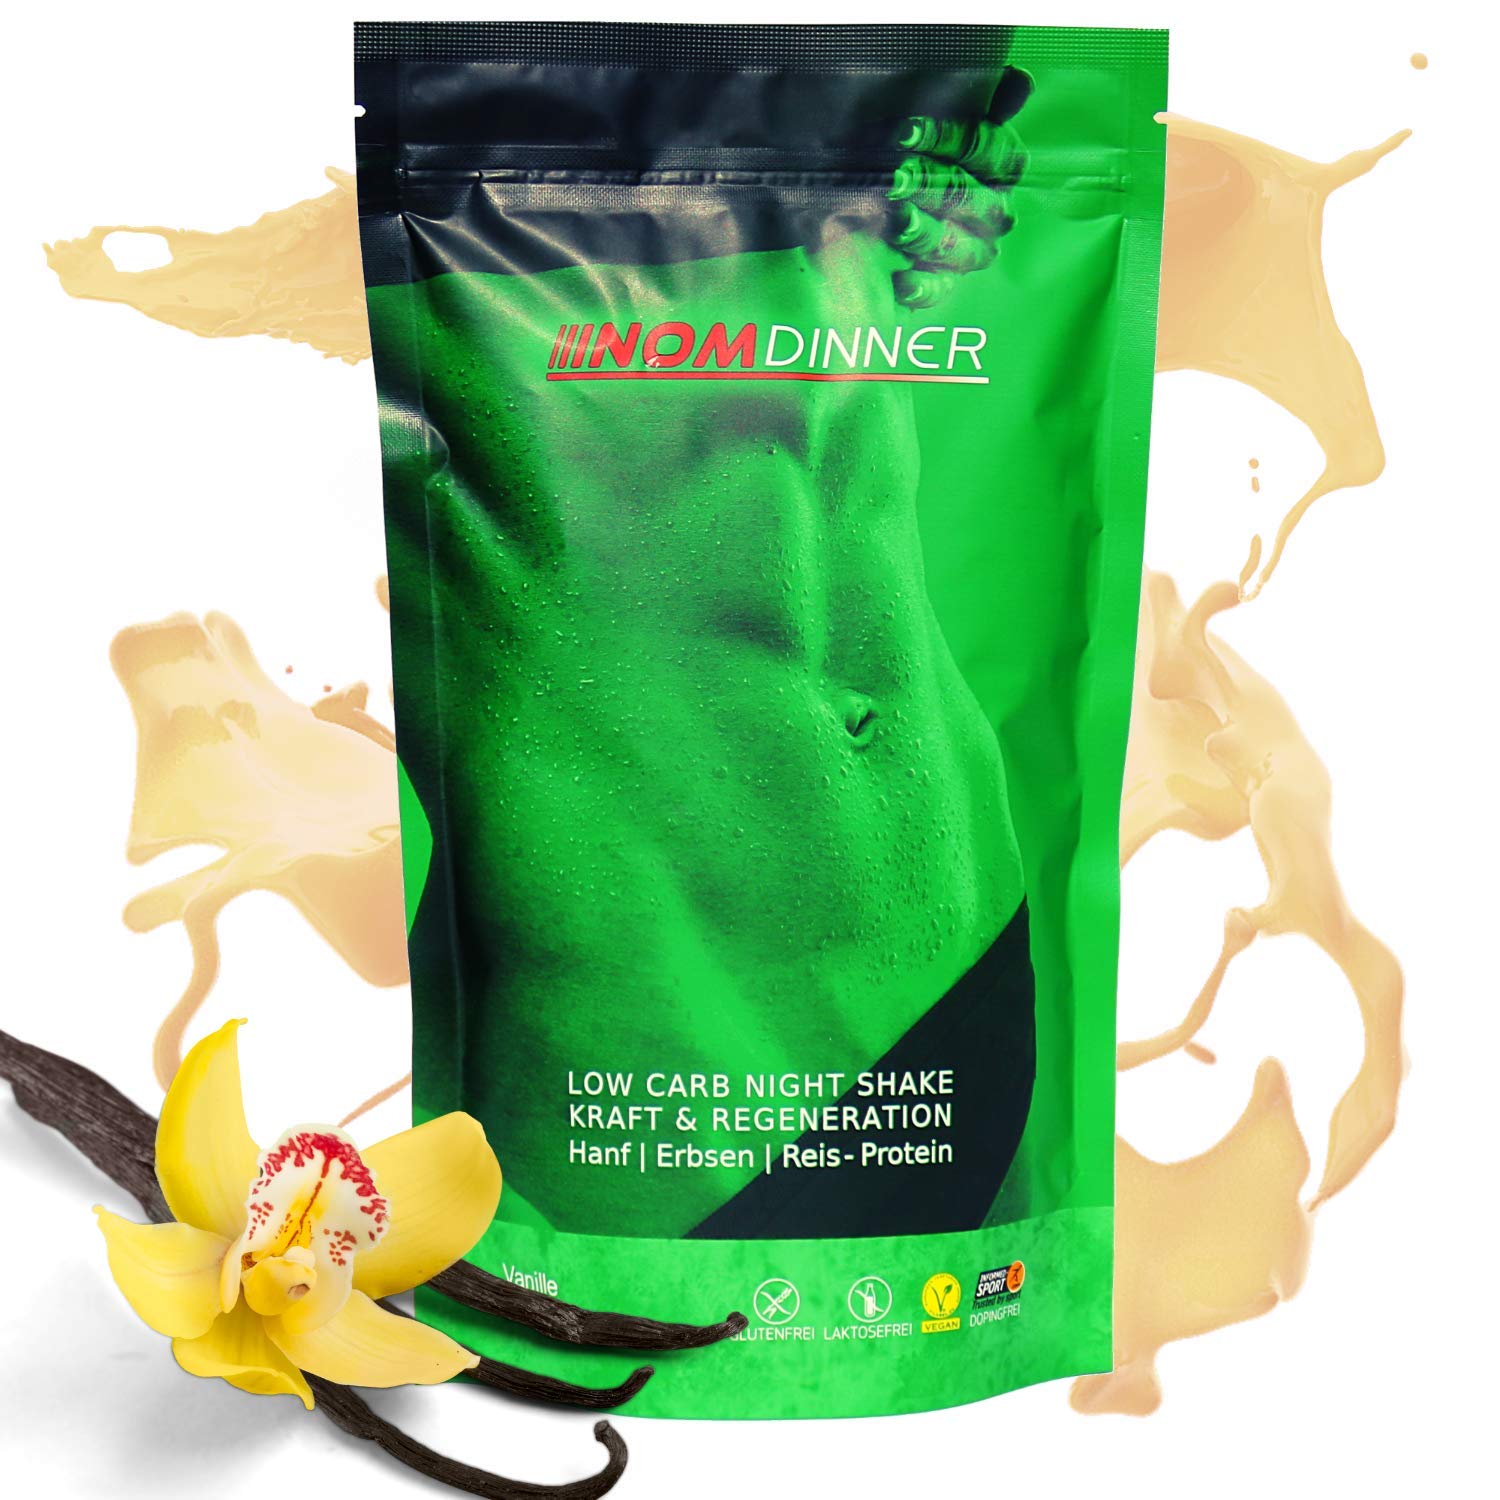 NOM Dinner Protein Pulver Vanille - Hochwertiges Proteinpulver zum Abnehmen - Schnell löslicher Eiweiß Shake - Veganes Reis, Erbsen und Hanfprotein (400g)